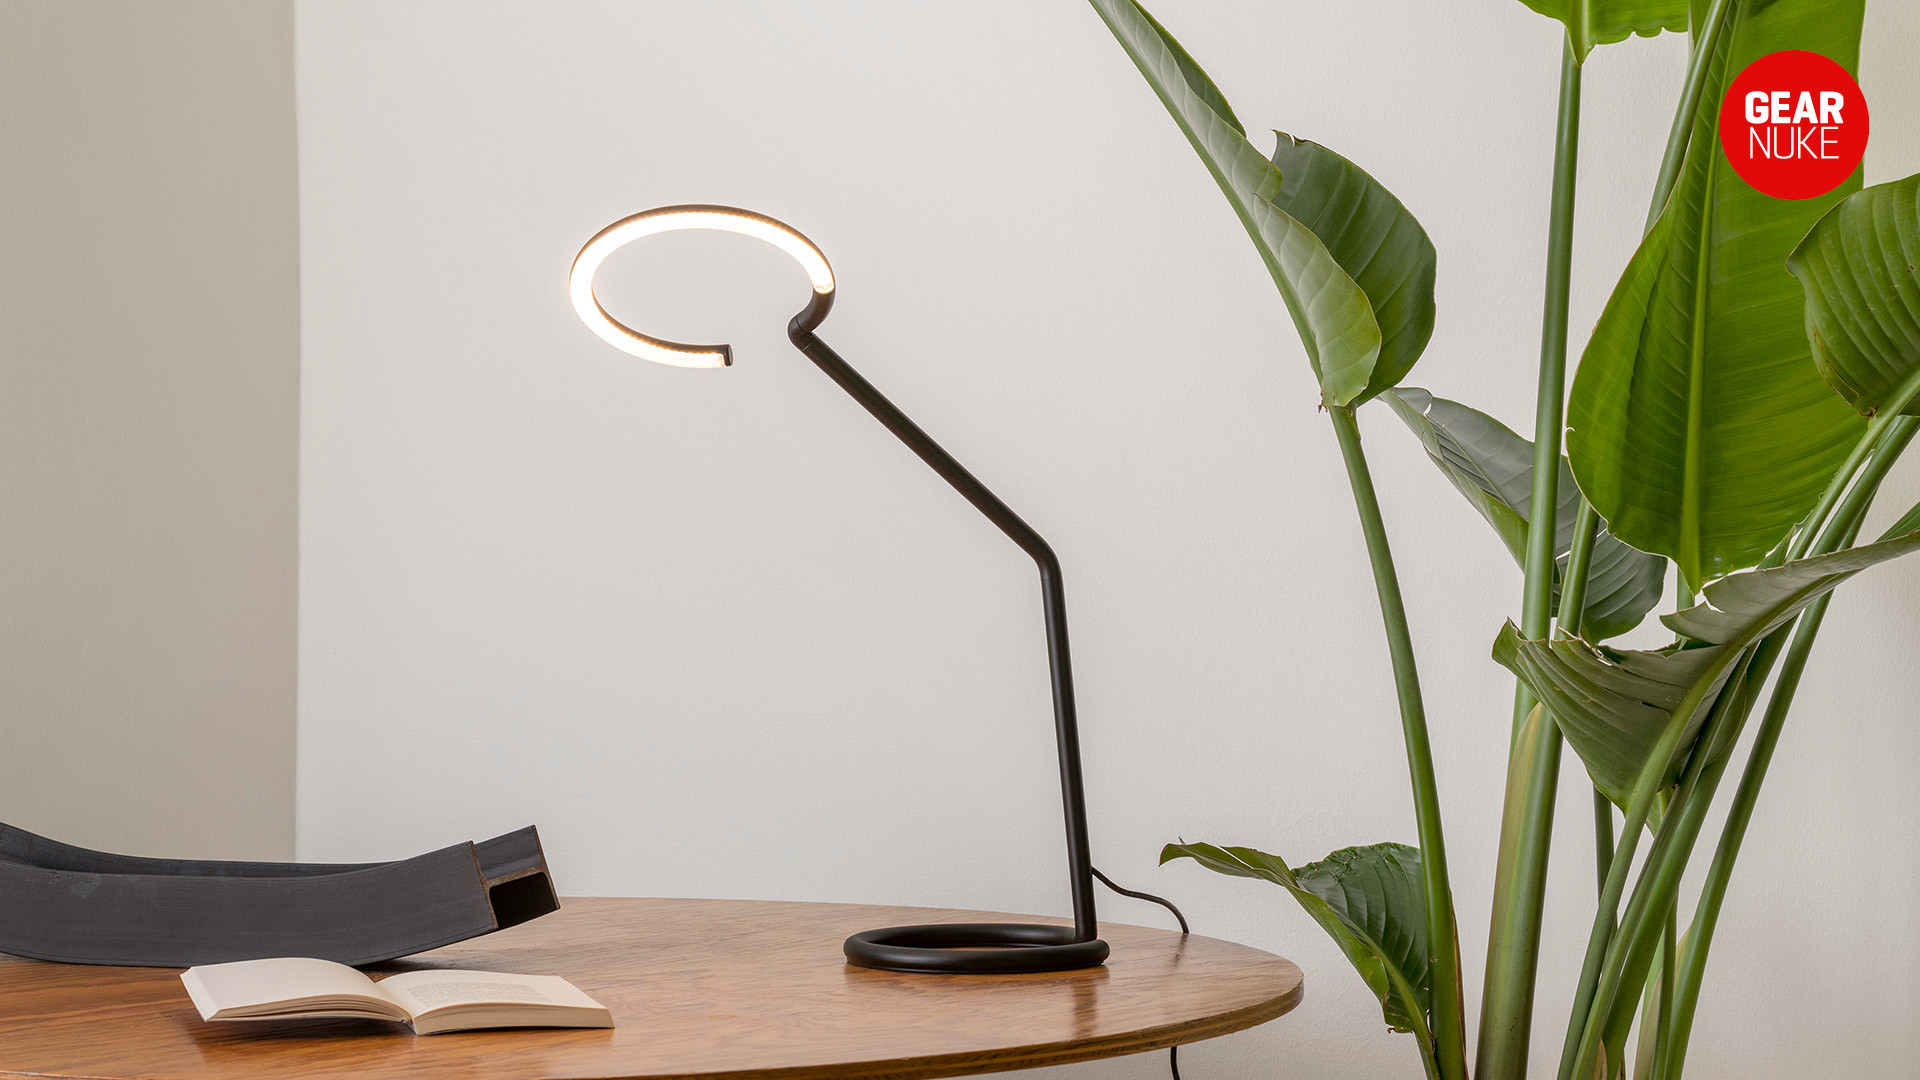 ring light alternatives - a desk light